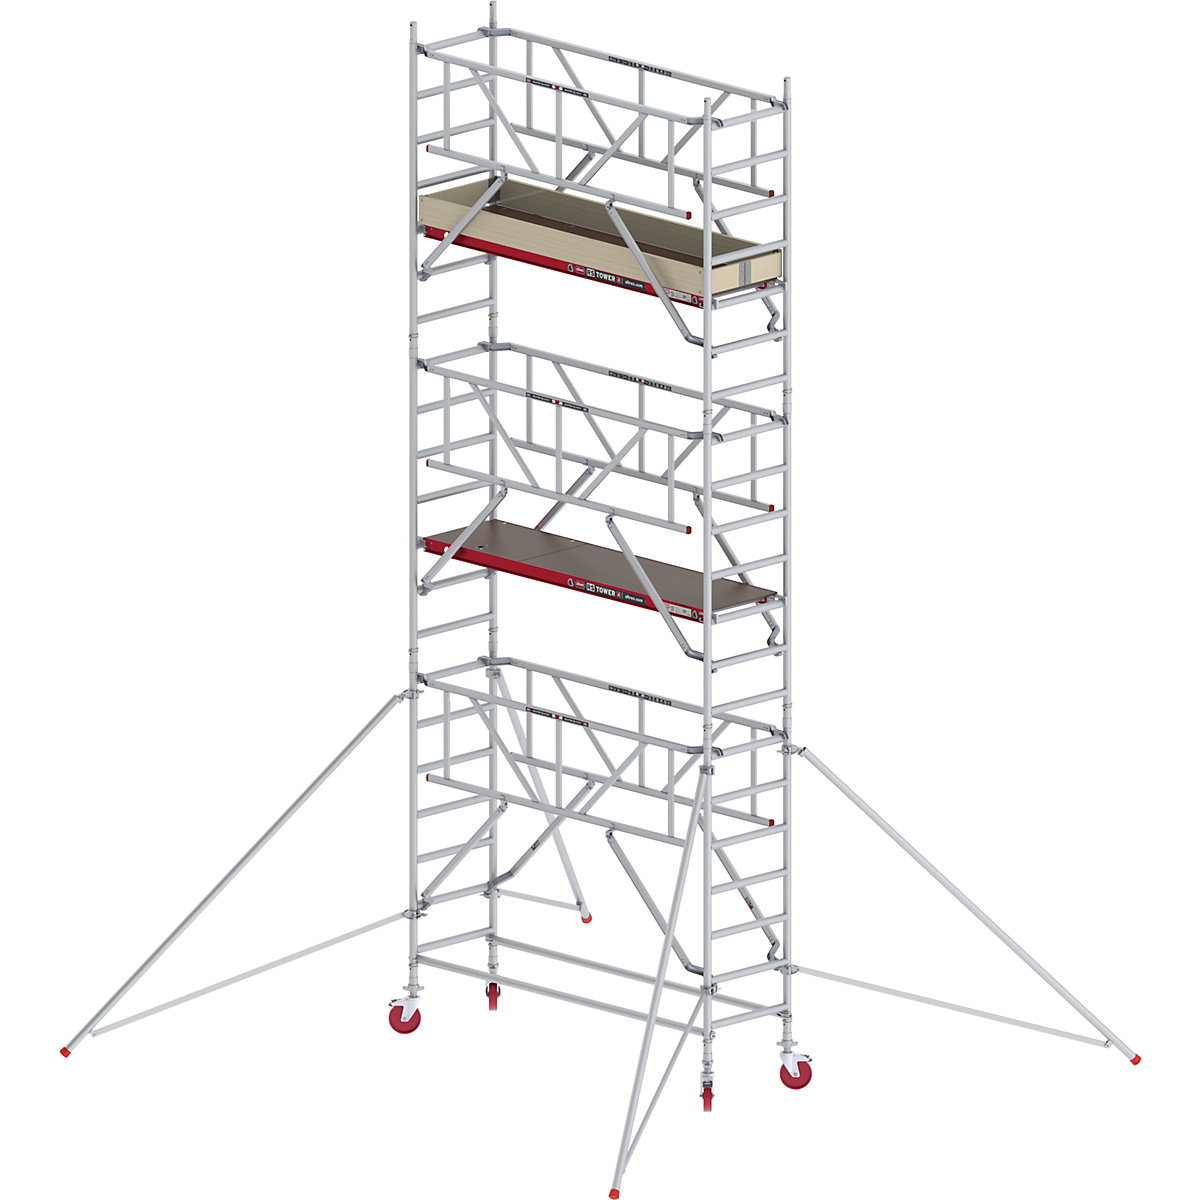 Schelă mobilă RS TOWER 41 îngustă cu Safe-Quick® – Altrex, platformă din lemn, lungime 1,85 m, înălțime de lucru 7,20 m-5